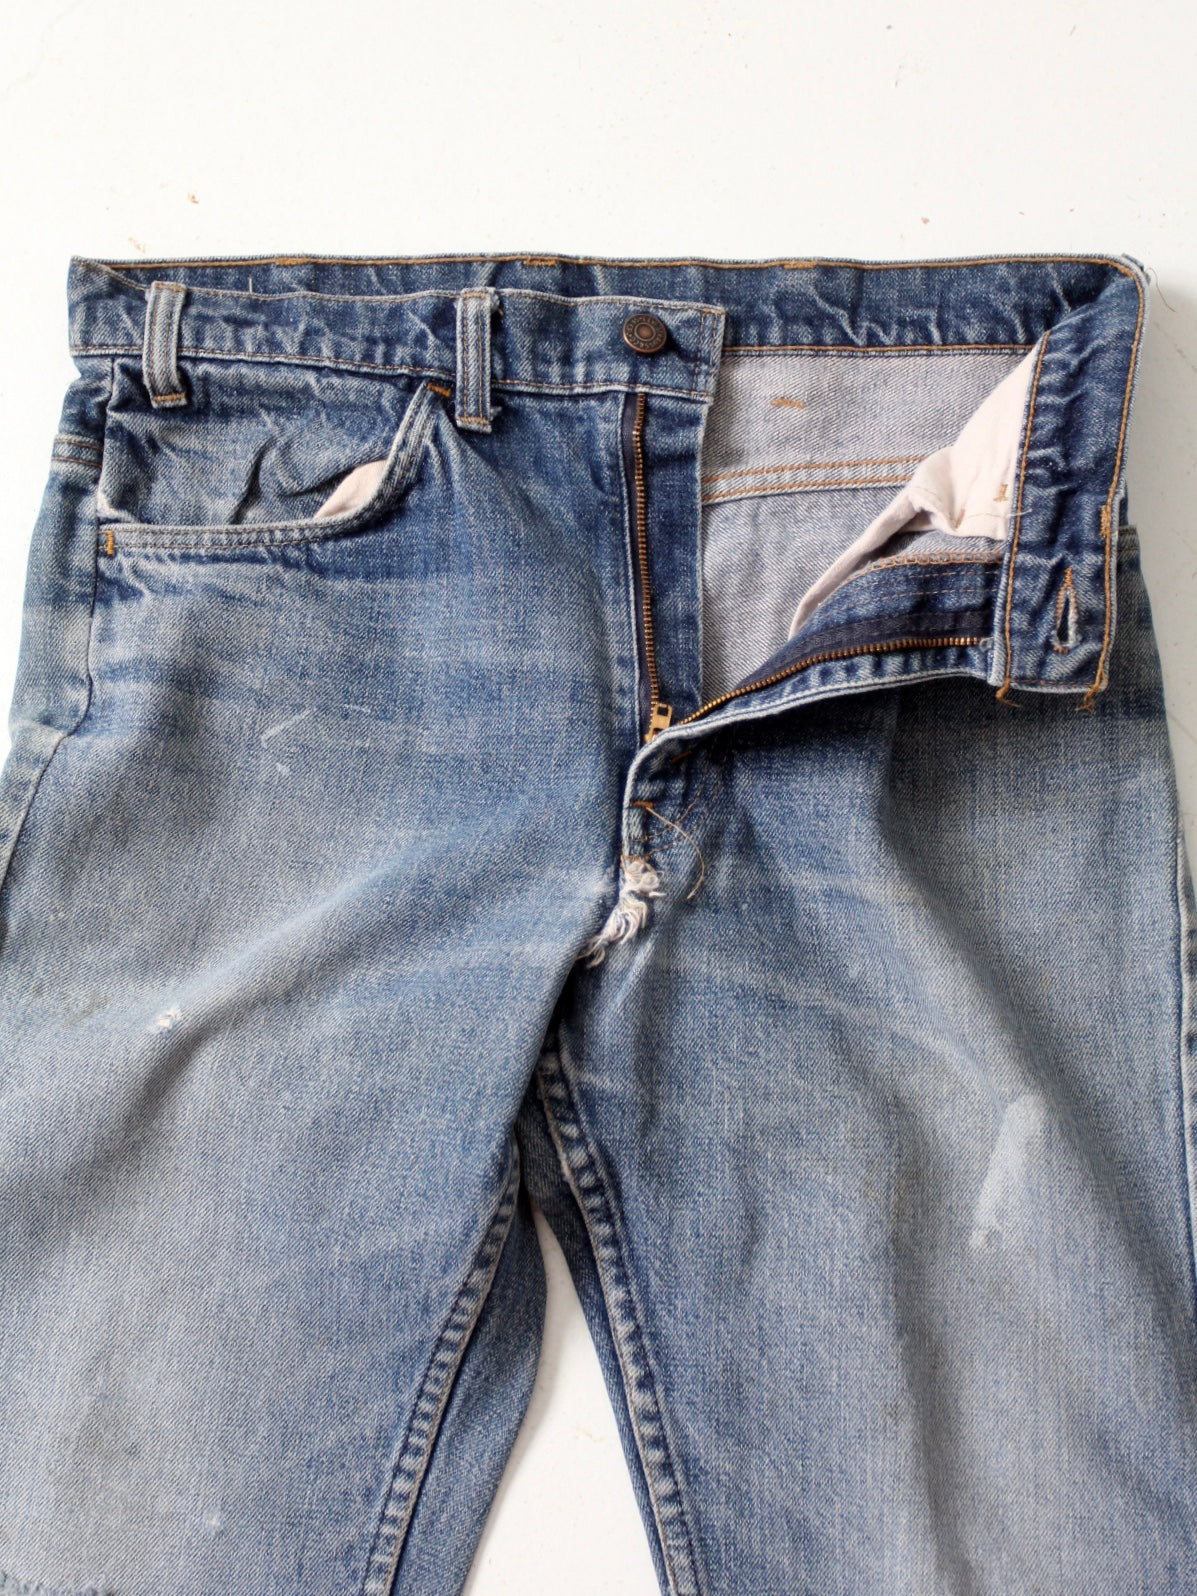 vintage Levis jeans, 31 x 29 – 86 Vintage